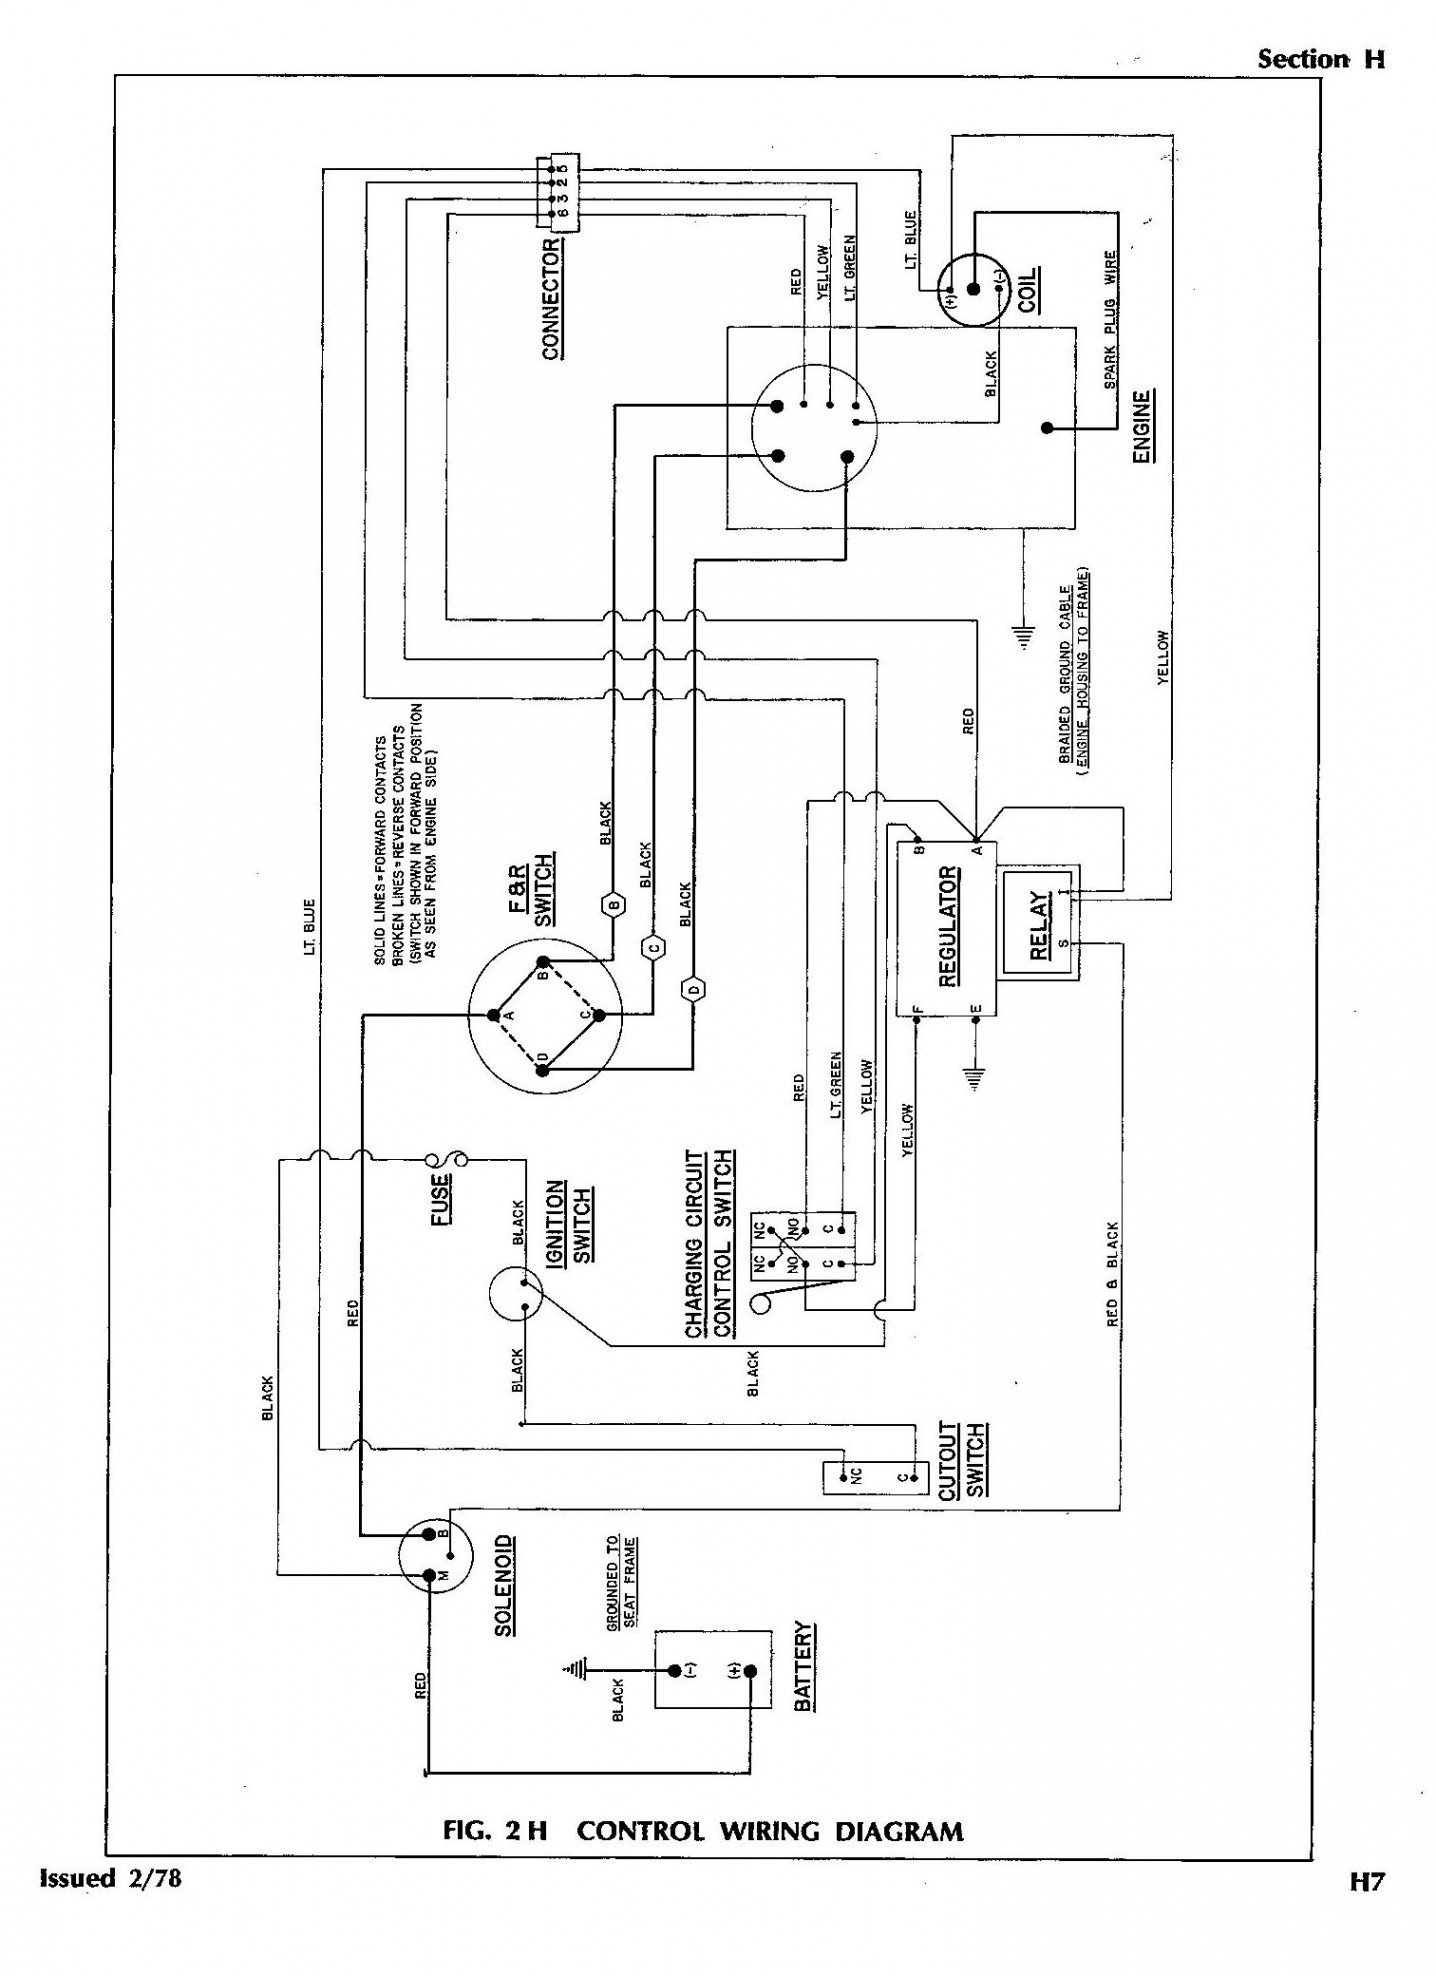 Engine Wiring Diagram Audi A2 Petrol Engine Diagram] 1987 Ez Go Wiring Diagram Full Version Hd Quality Of Engine Wiring Diagram Audi A2 Petrol Engine